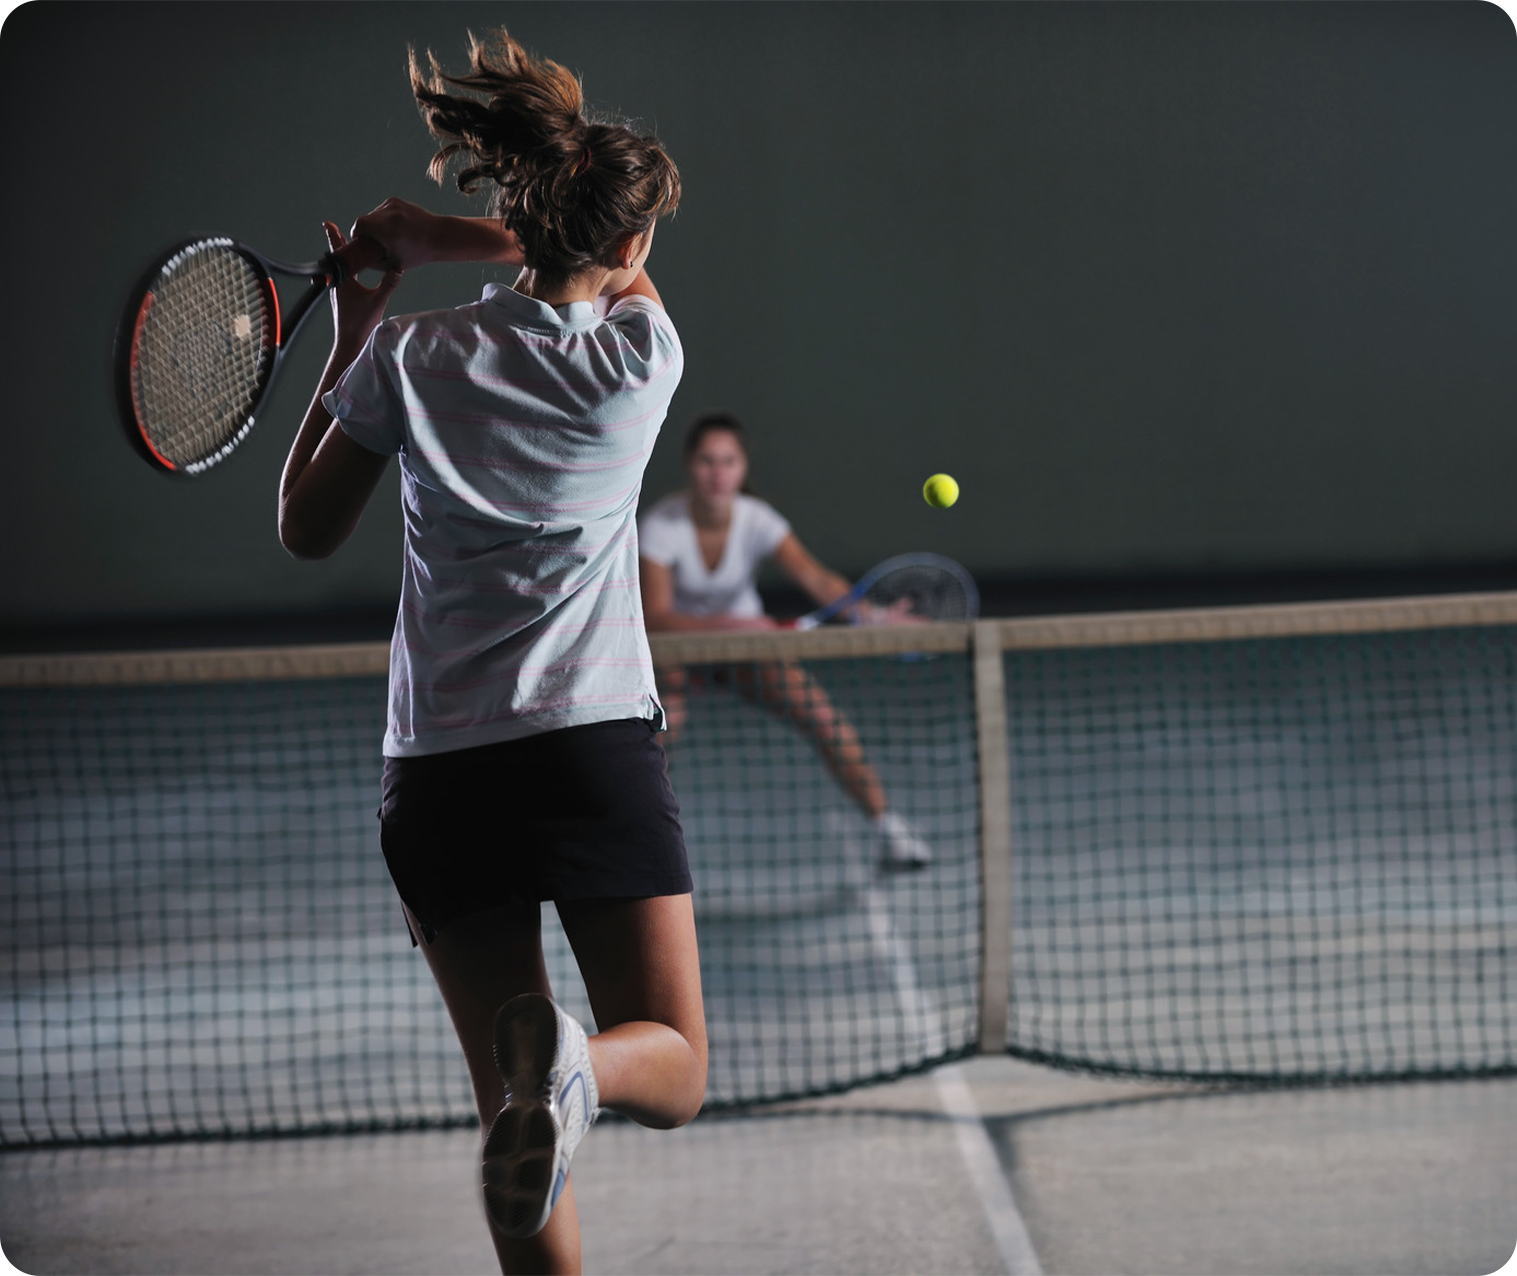 групповые занятия теннисом для взрослых